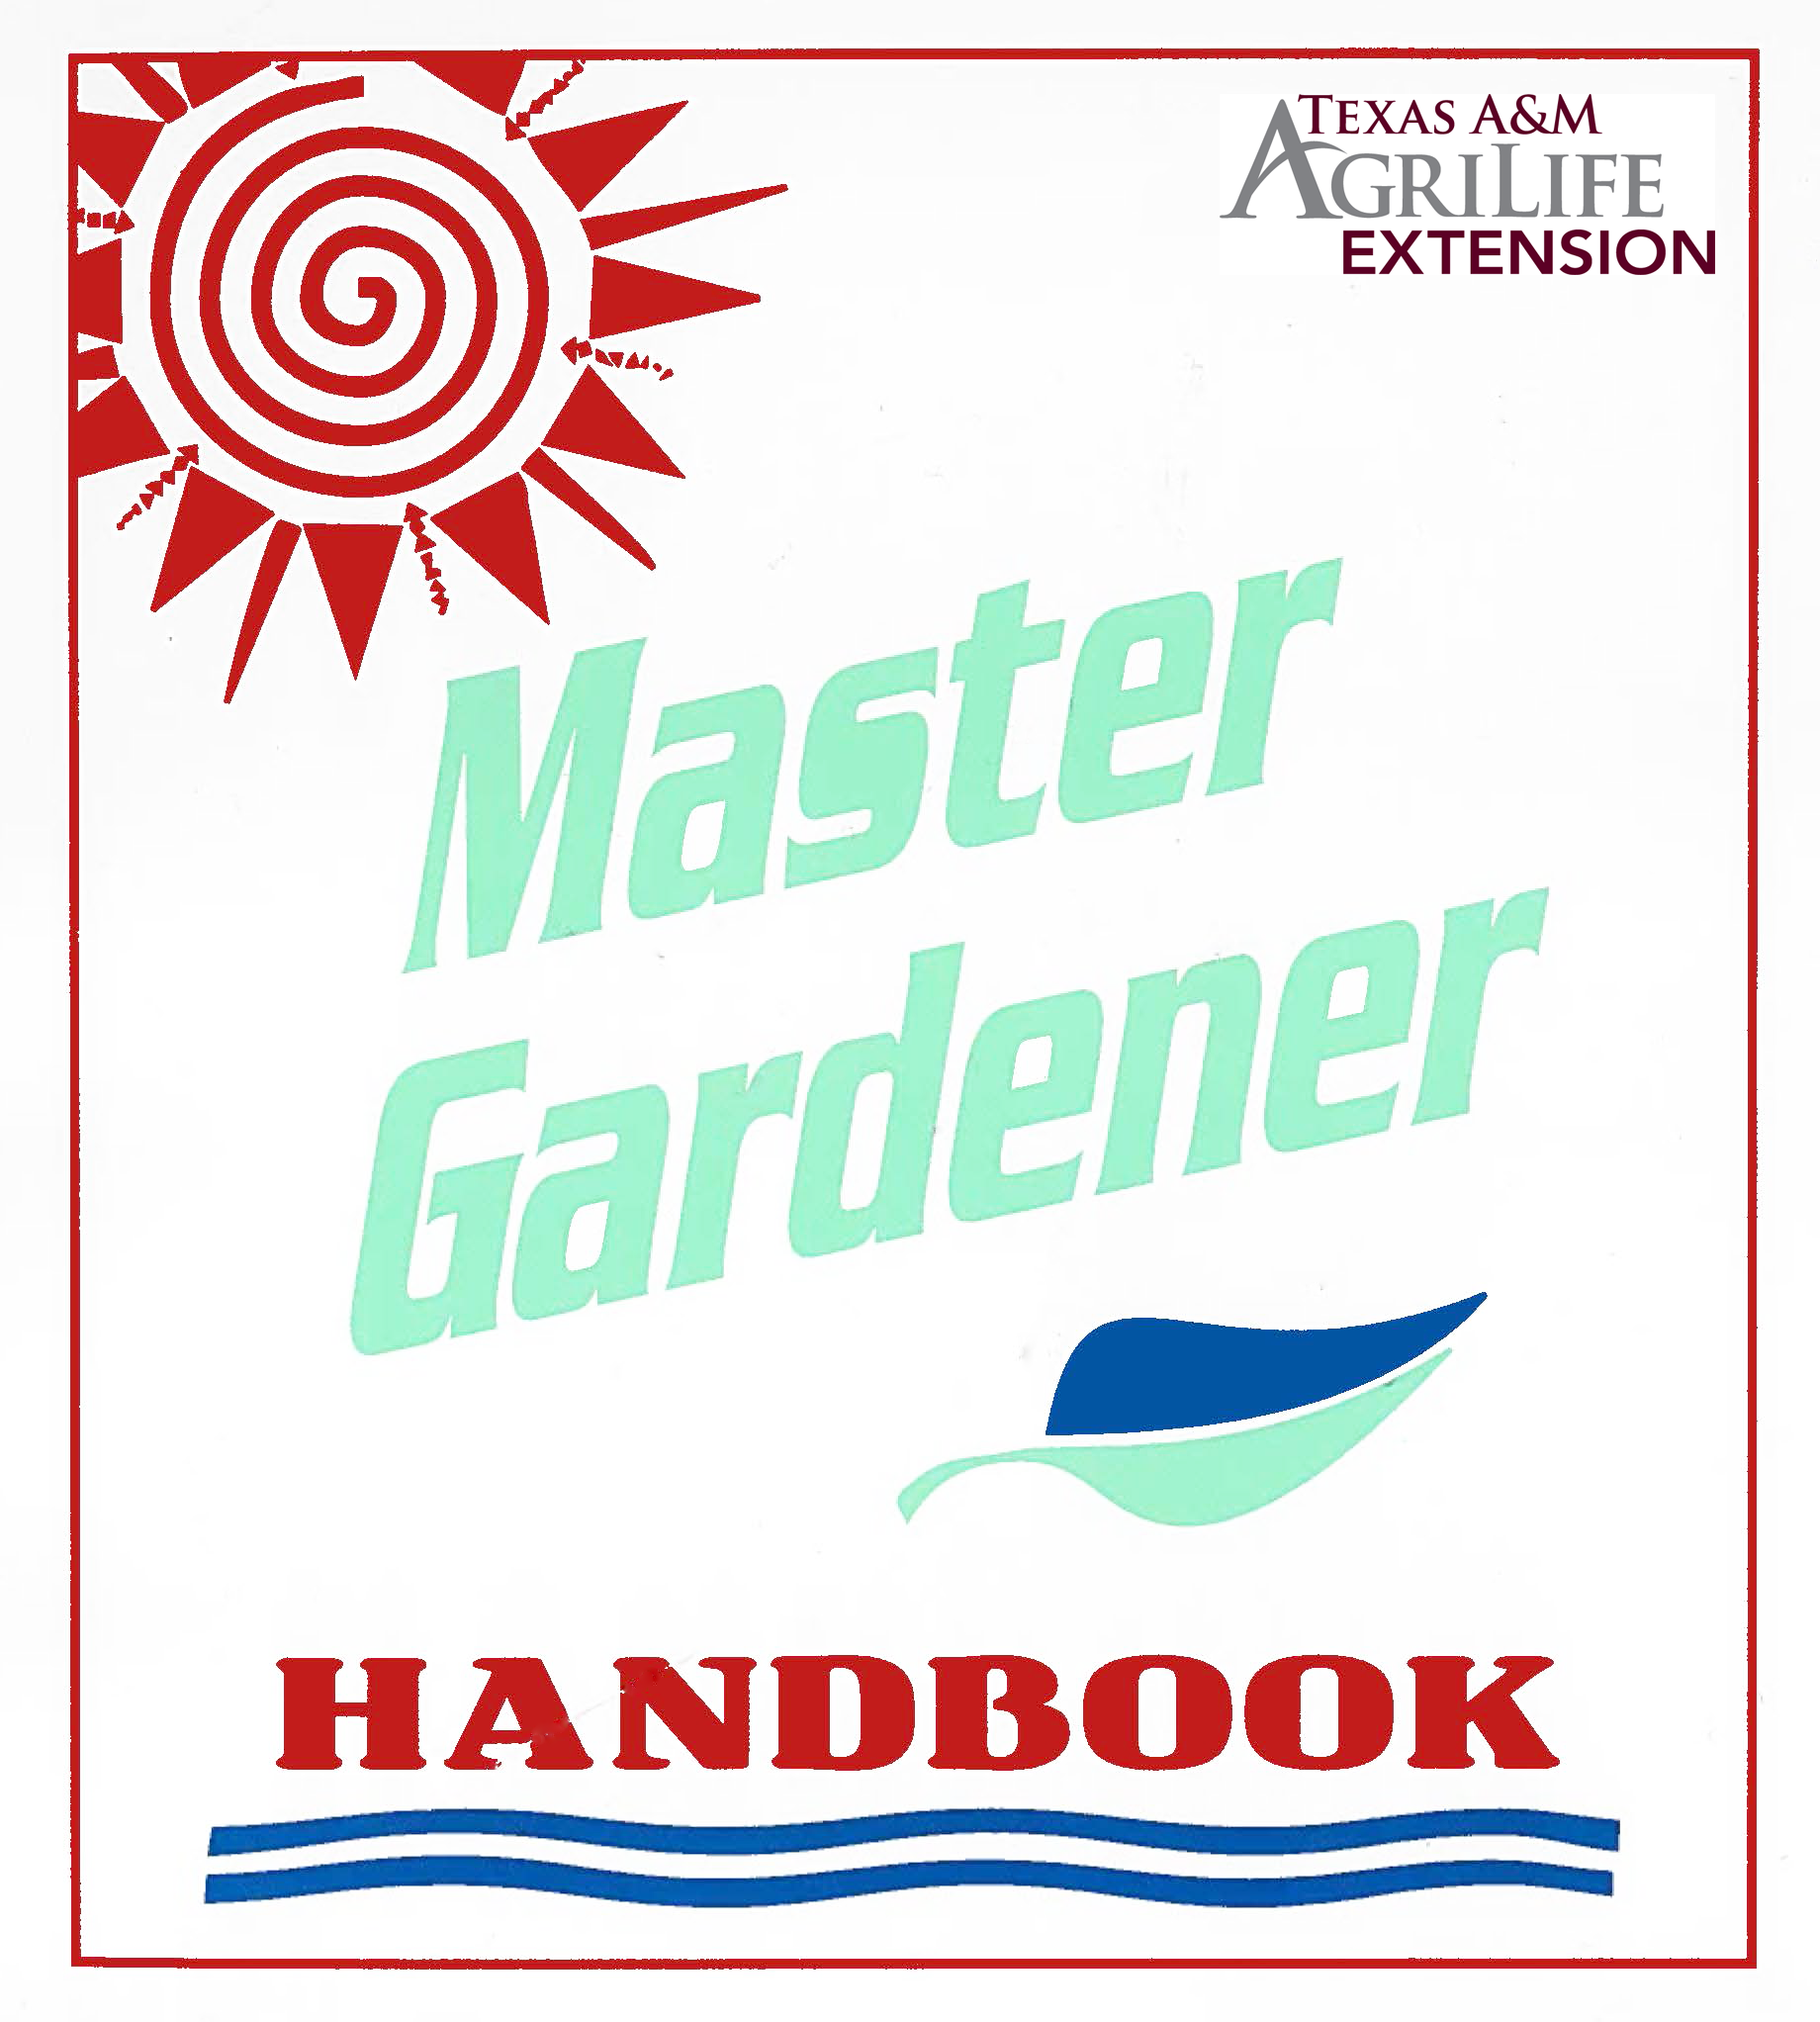 Master Gardener Handbook